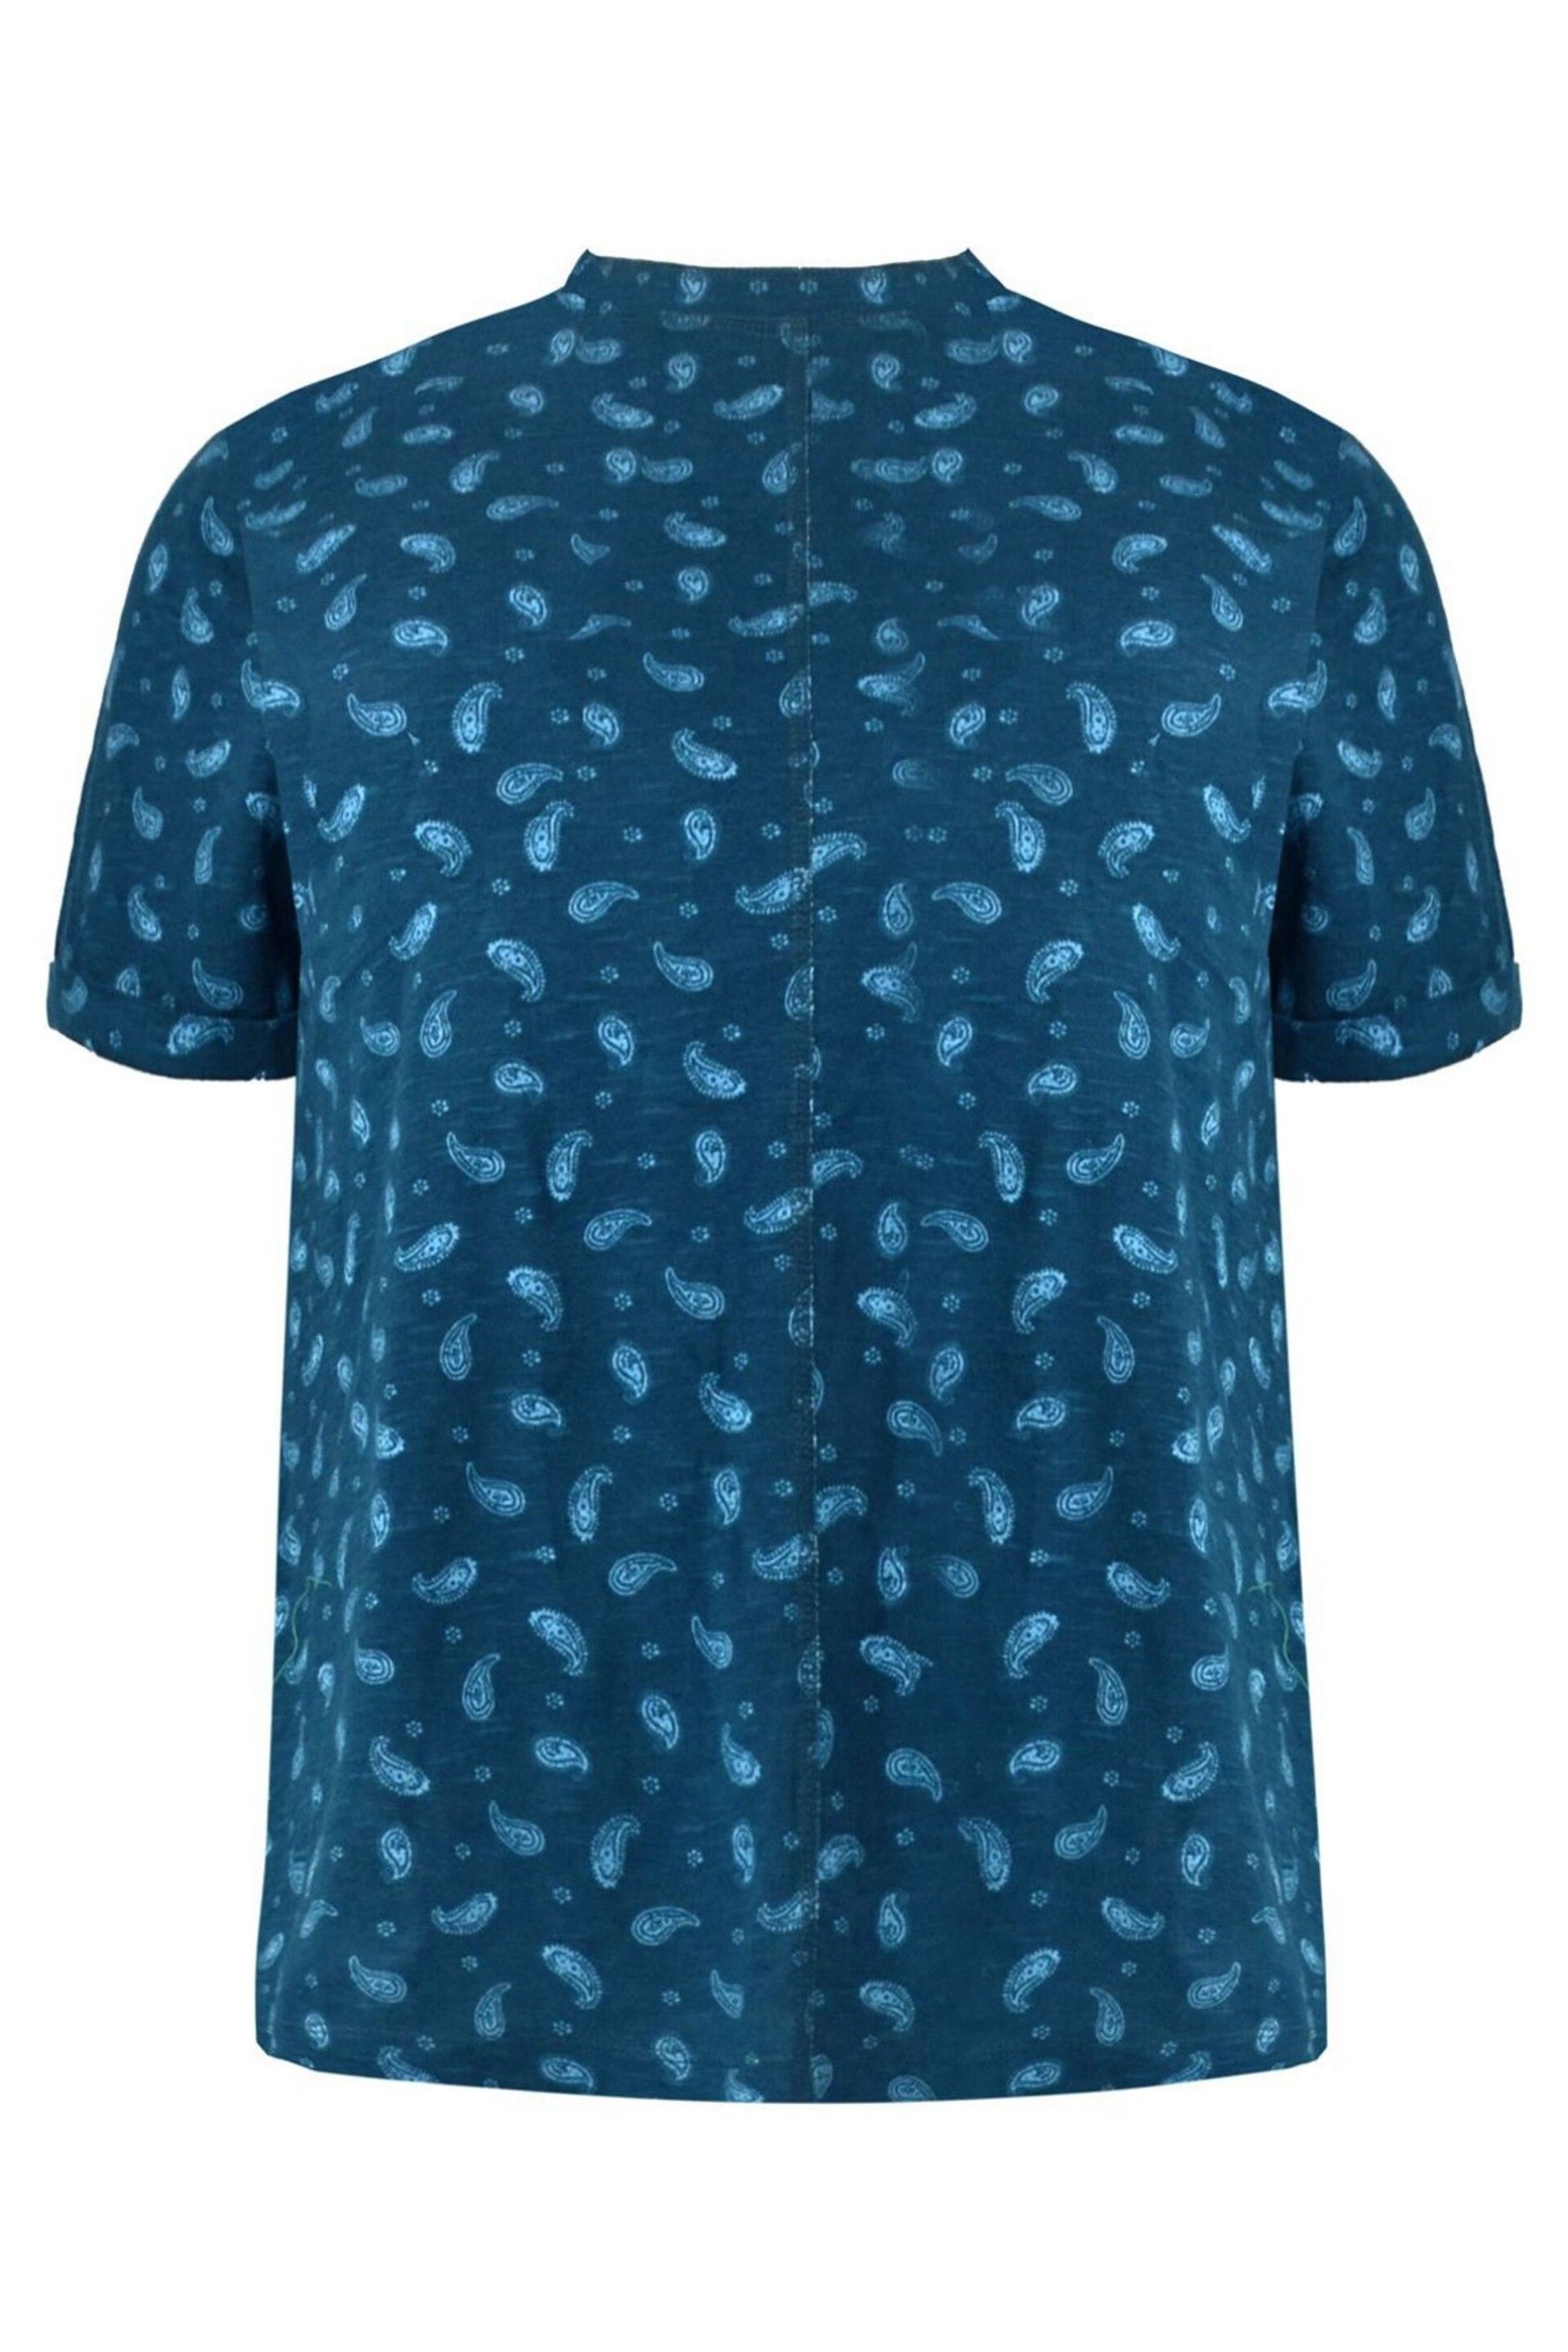 Live Unlimited Curve Blue Paisley Print Cotton Slub Round Neck T-Shirt - Image 7 of 7